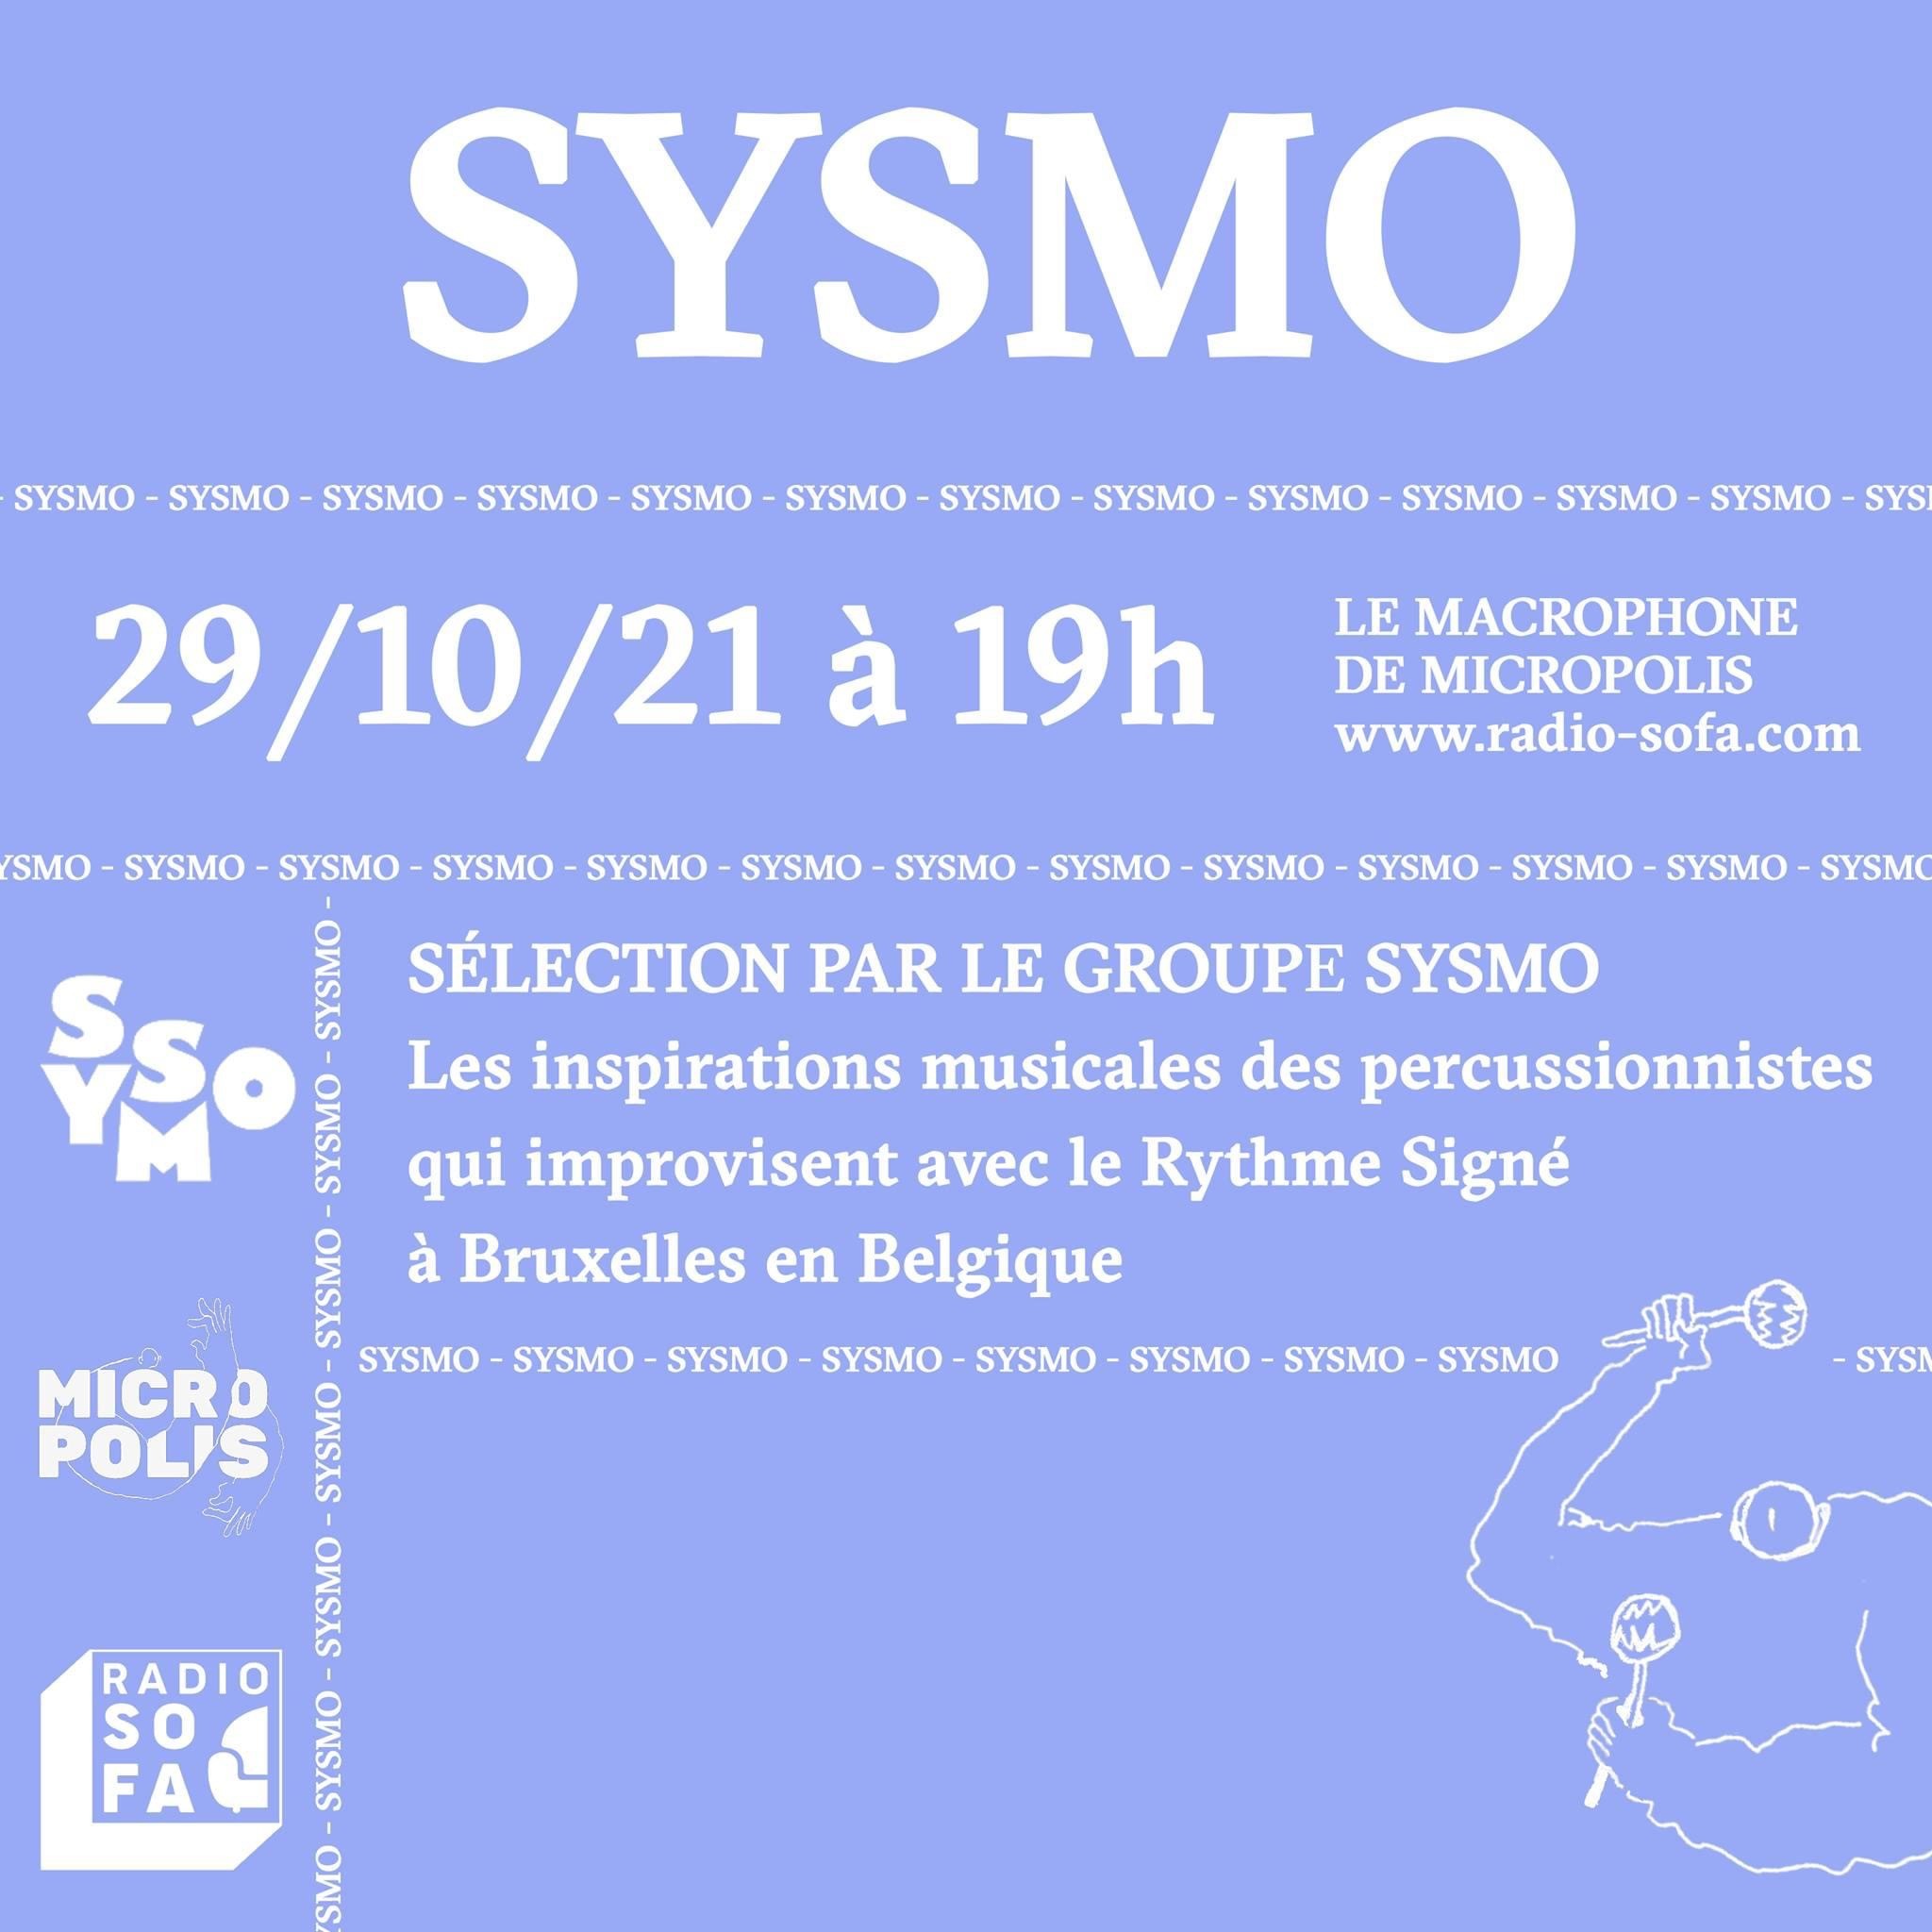 MICROPOLIS invite SYSMO